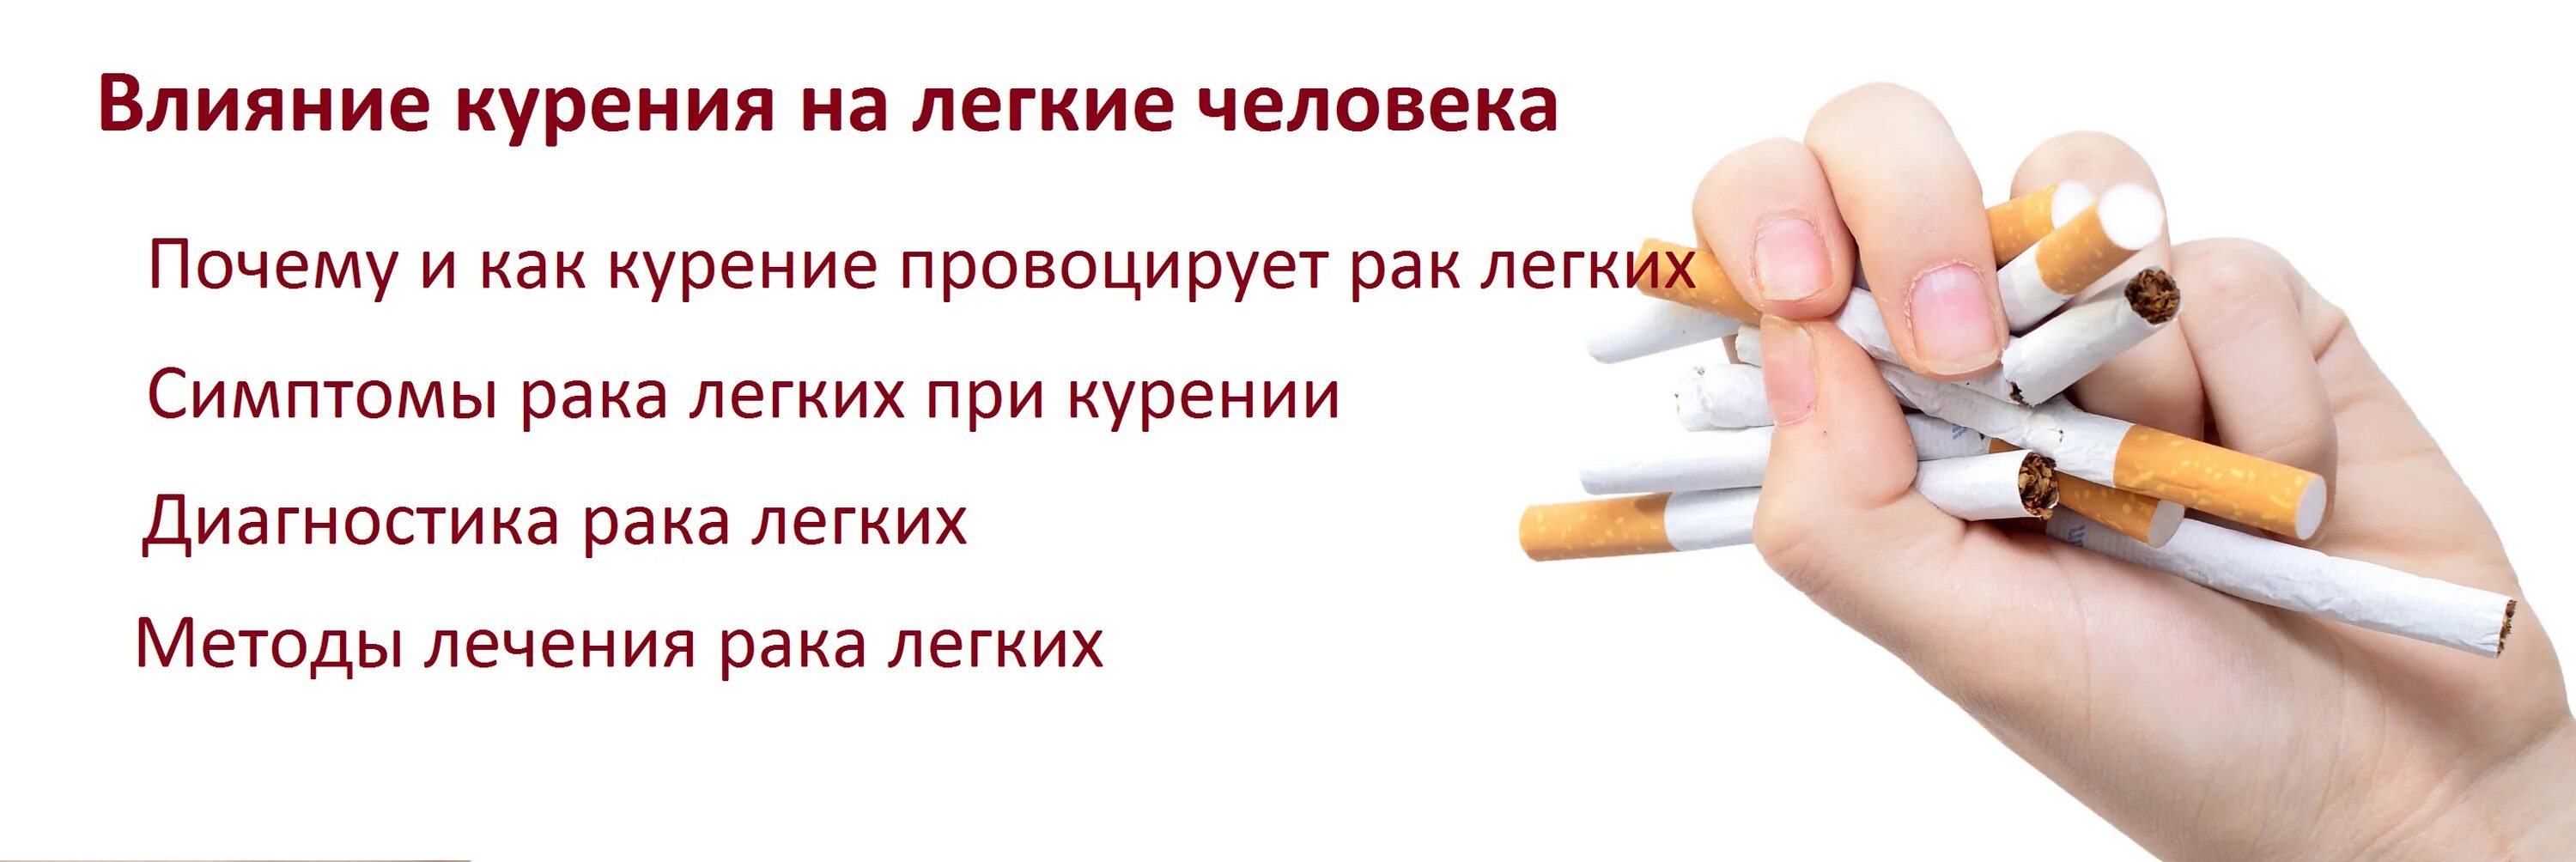 Песня больно курить. Диагностика табакокурения. Как вылечить легкие курильщику.